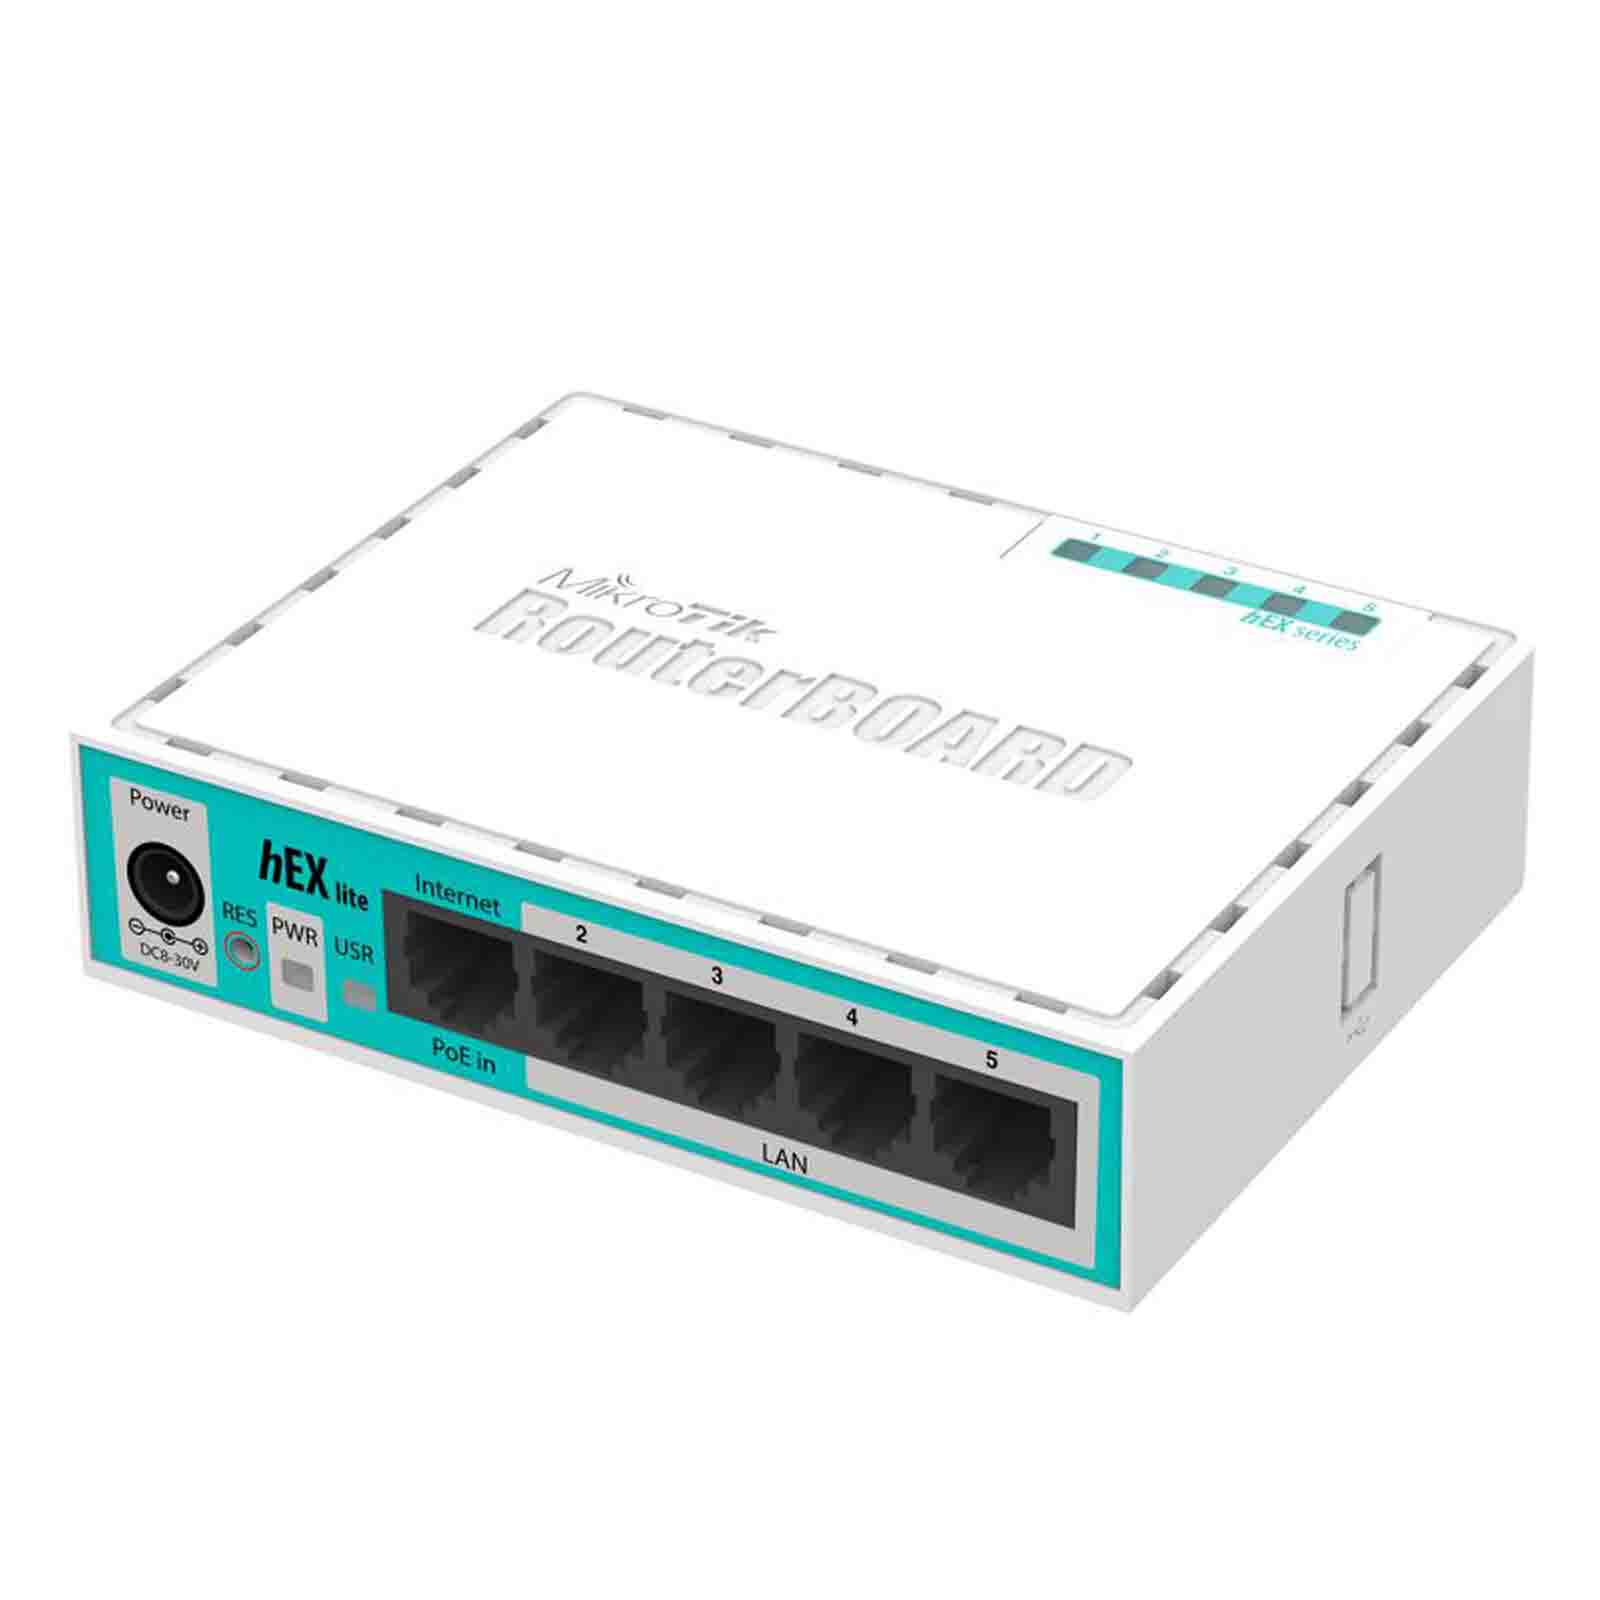 Router hEX lite RB750r2 MikroTik